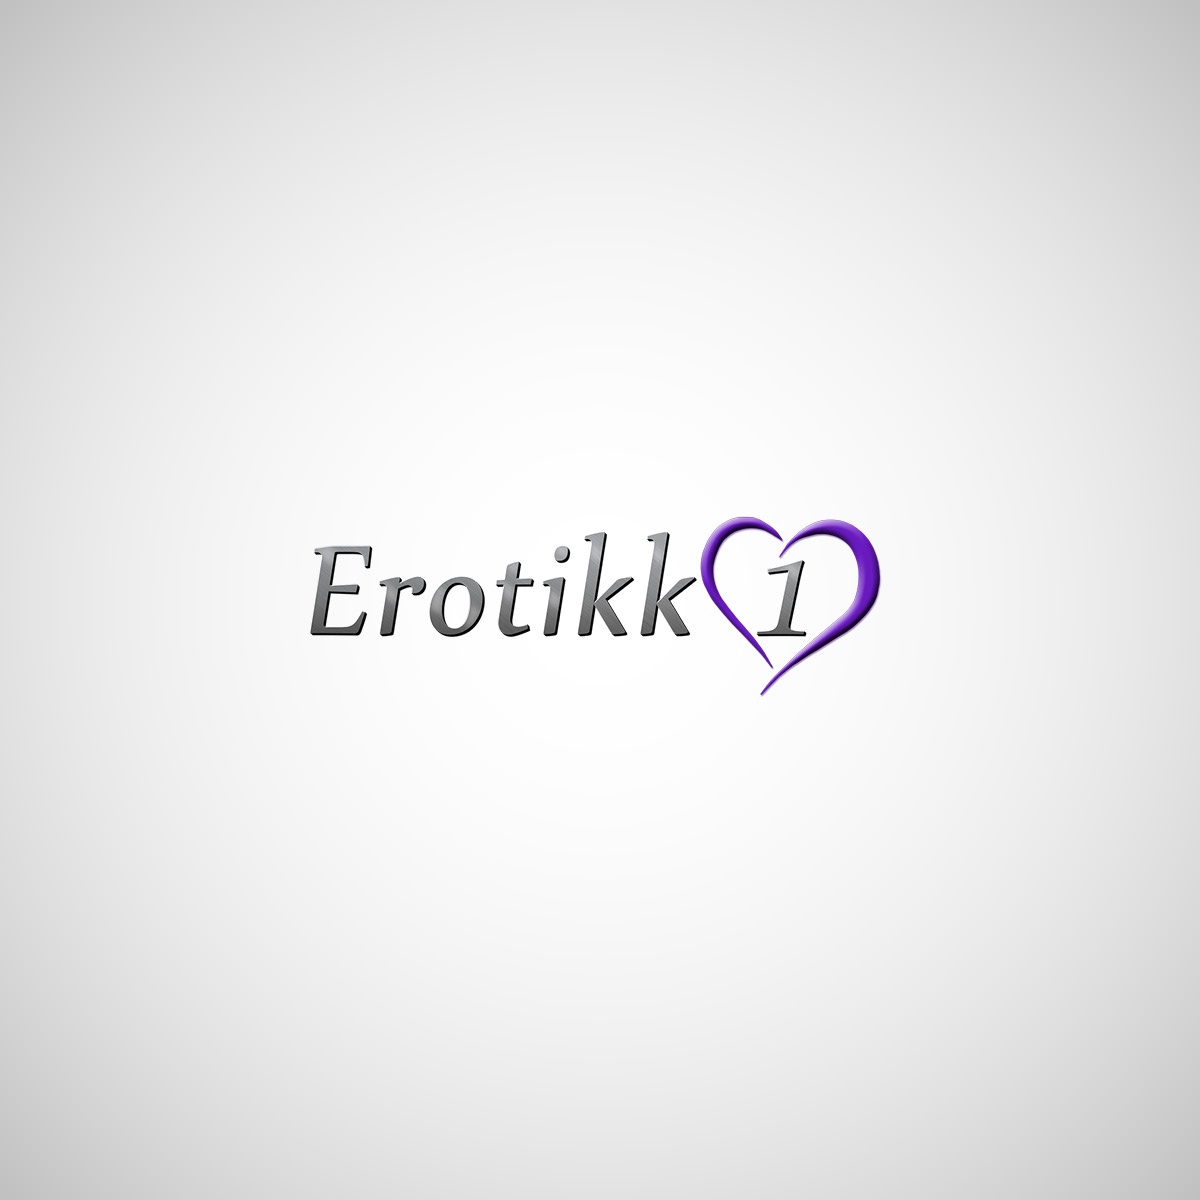 Erotikk1_1200x1200.jpg